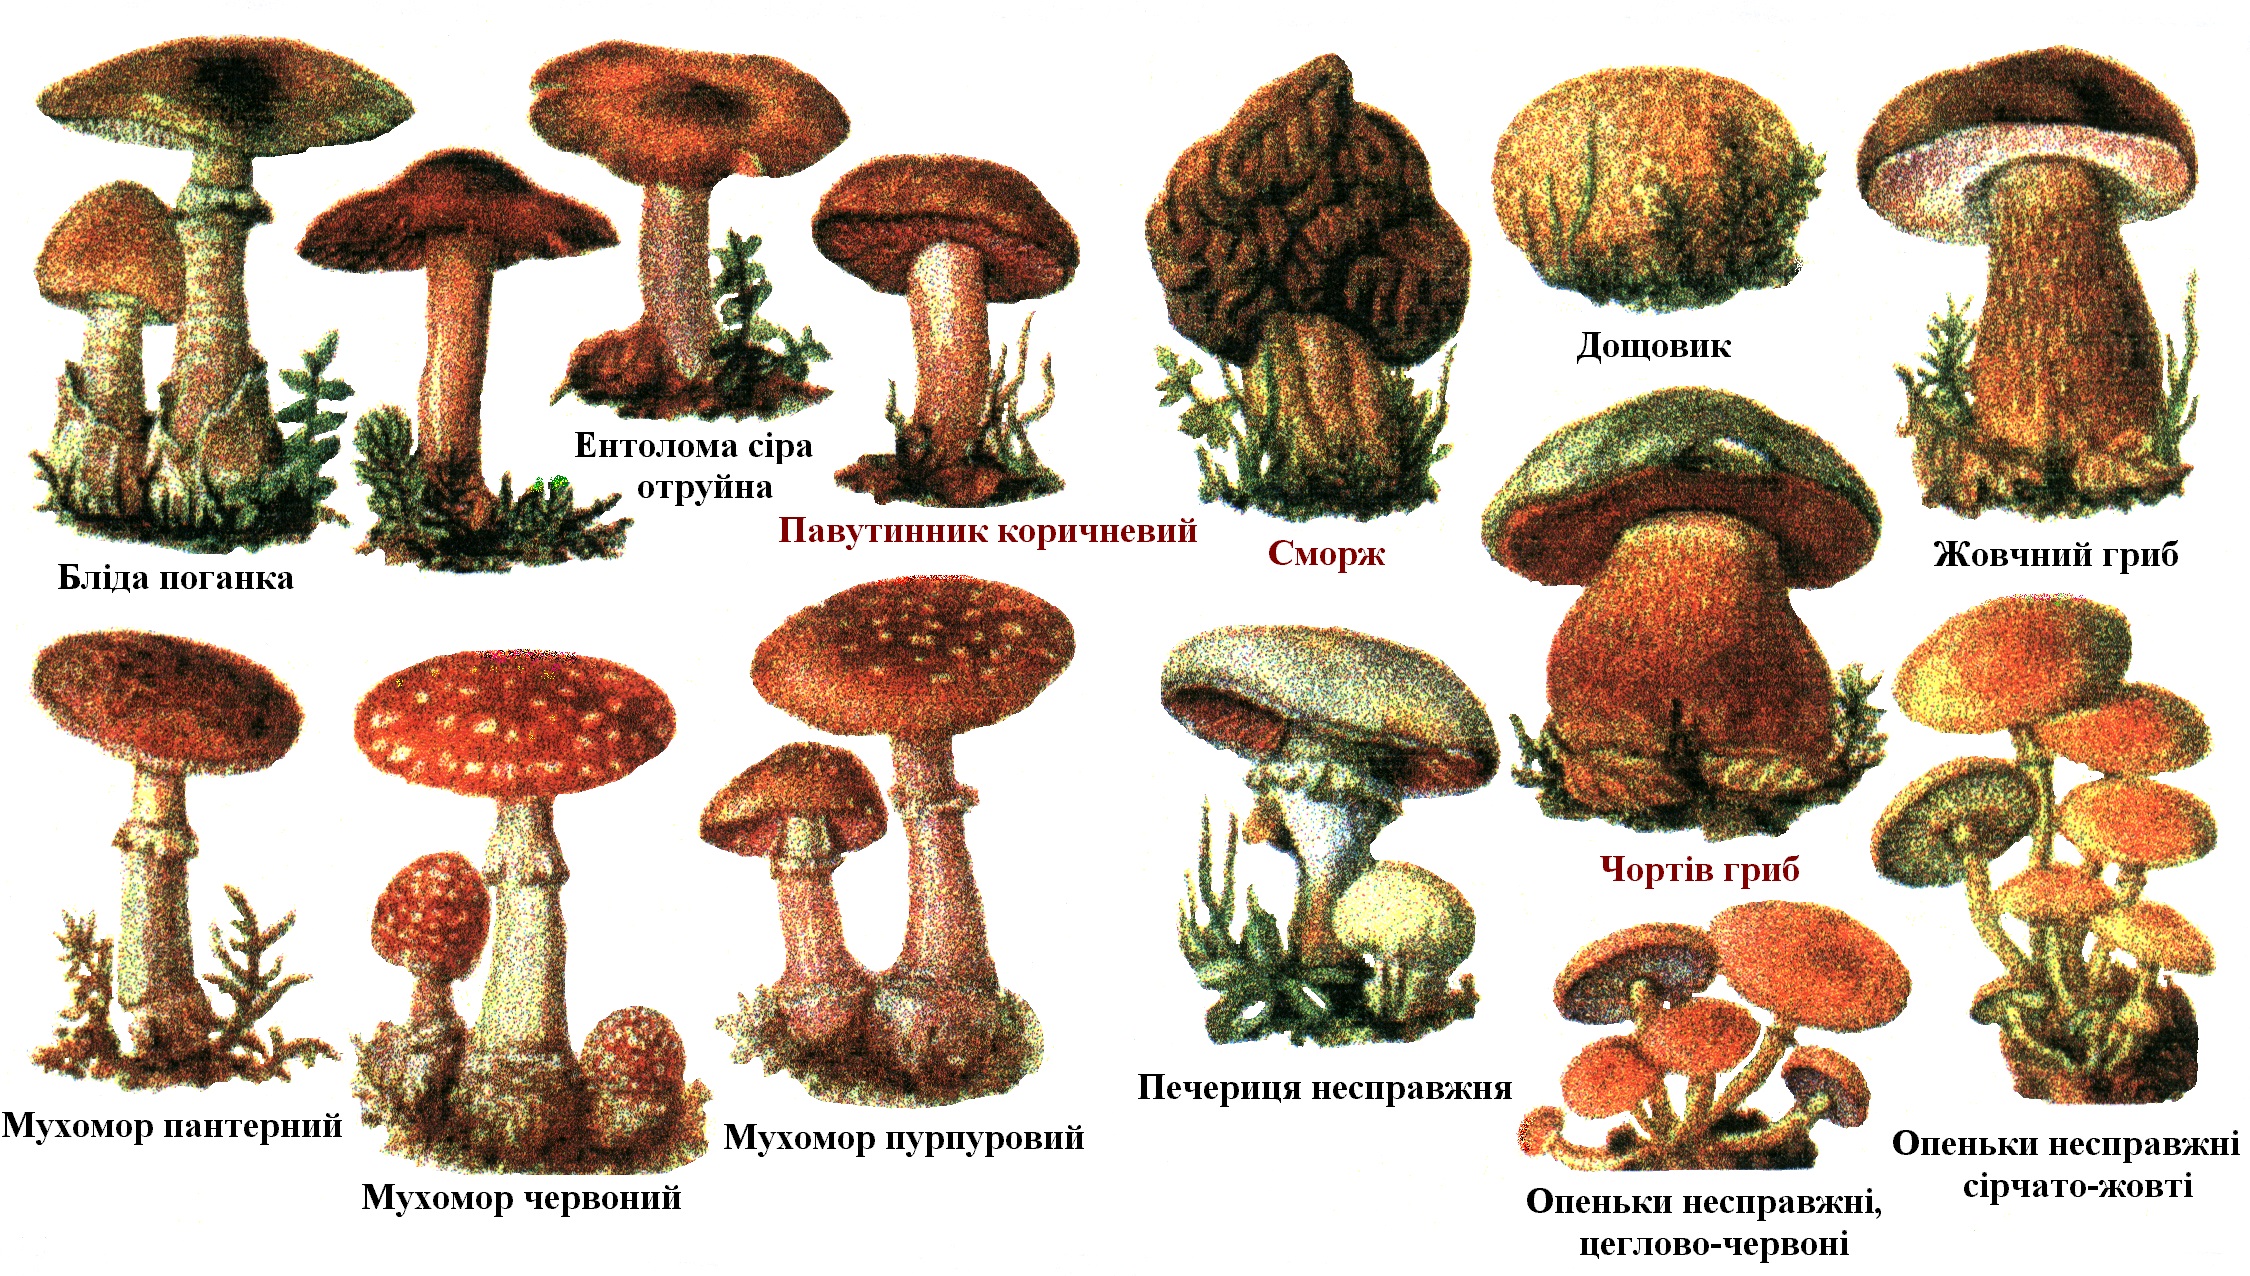 Съедобные грибы и несъедобные грибы и условно съедобные